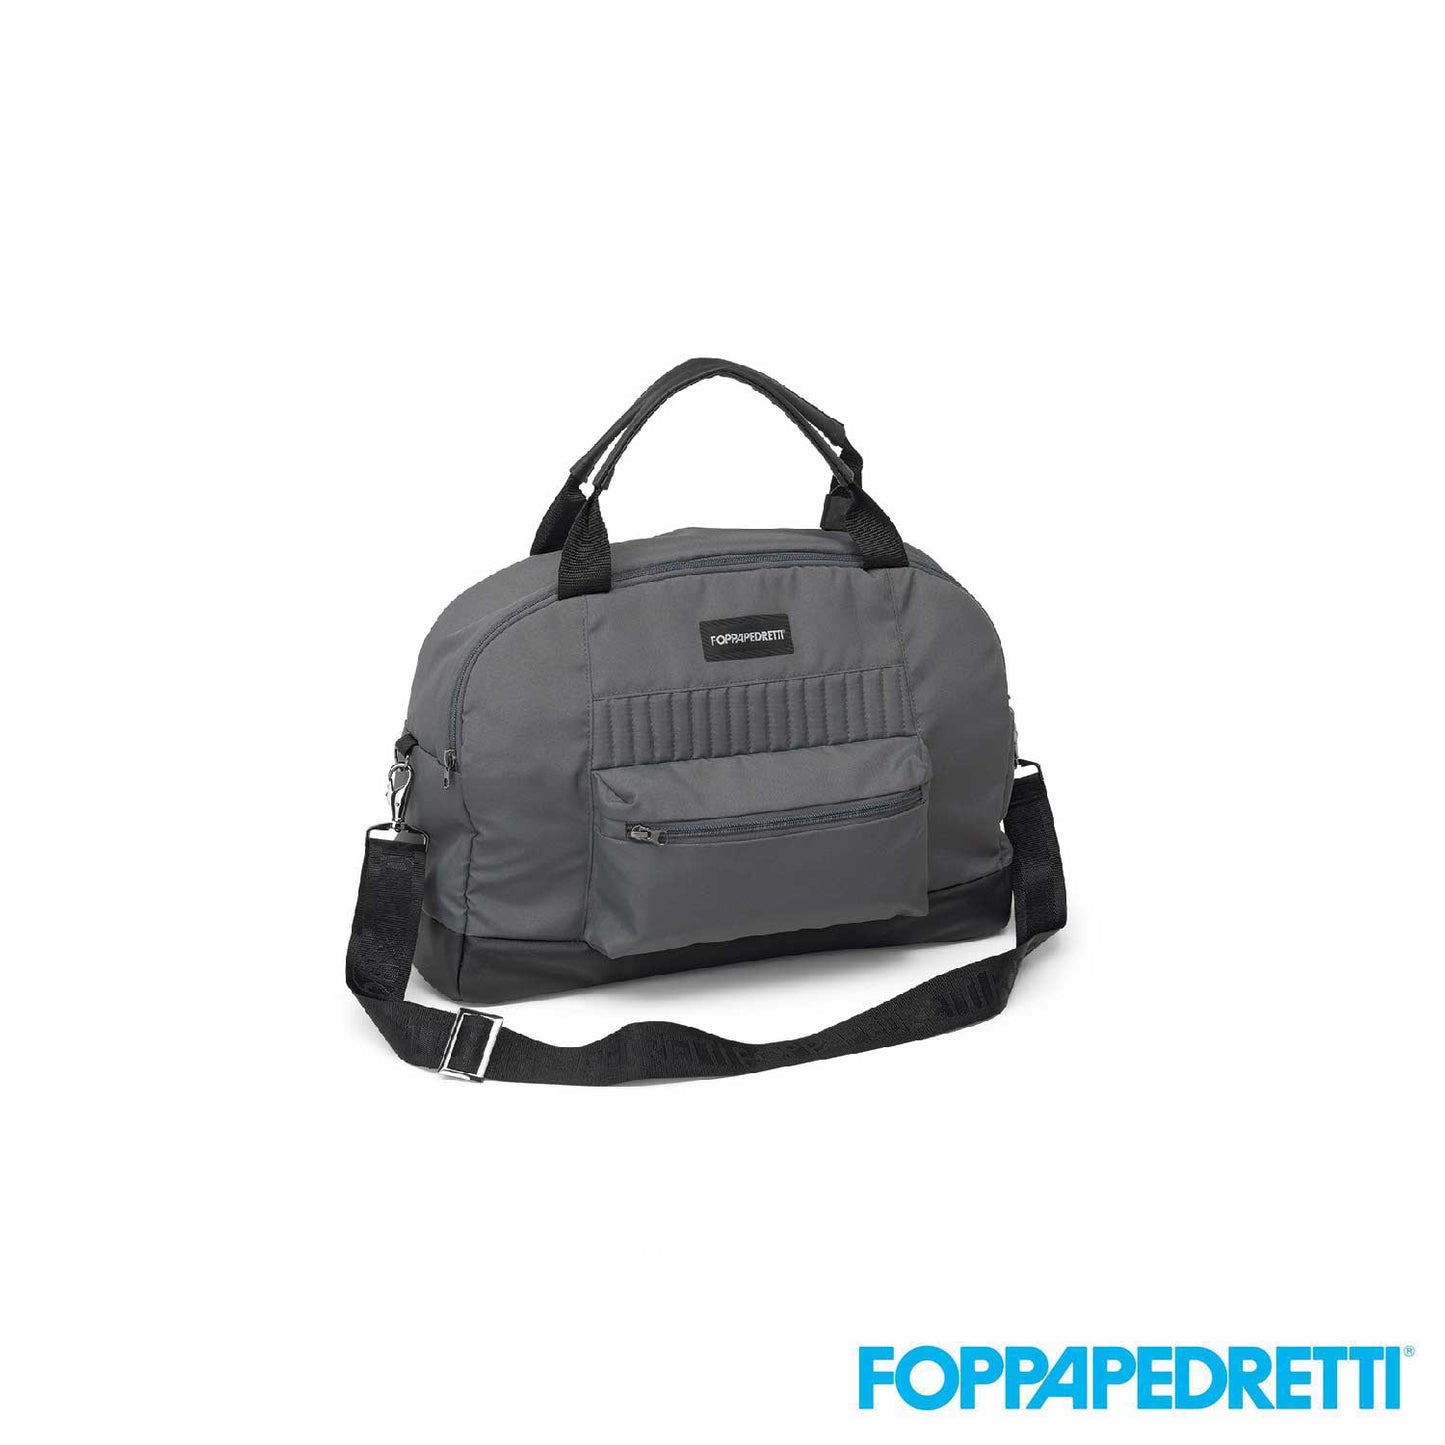 Foppapedretti - Borsa Comfort con fasciatoio